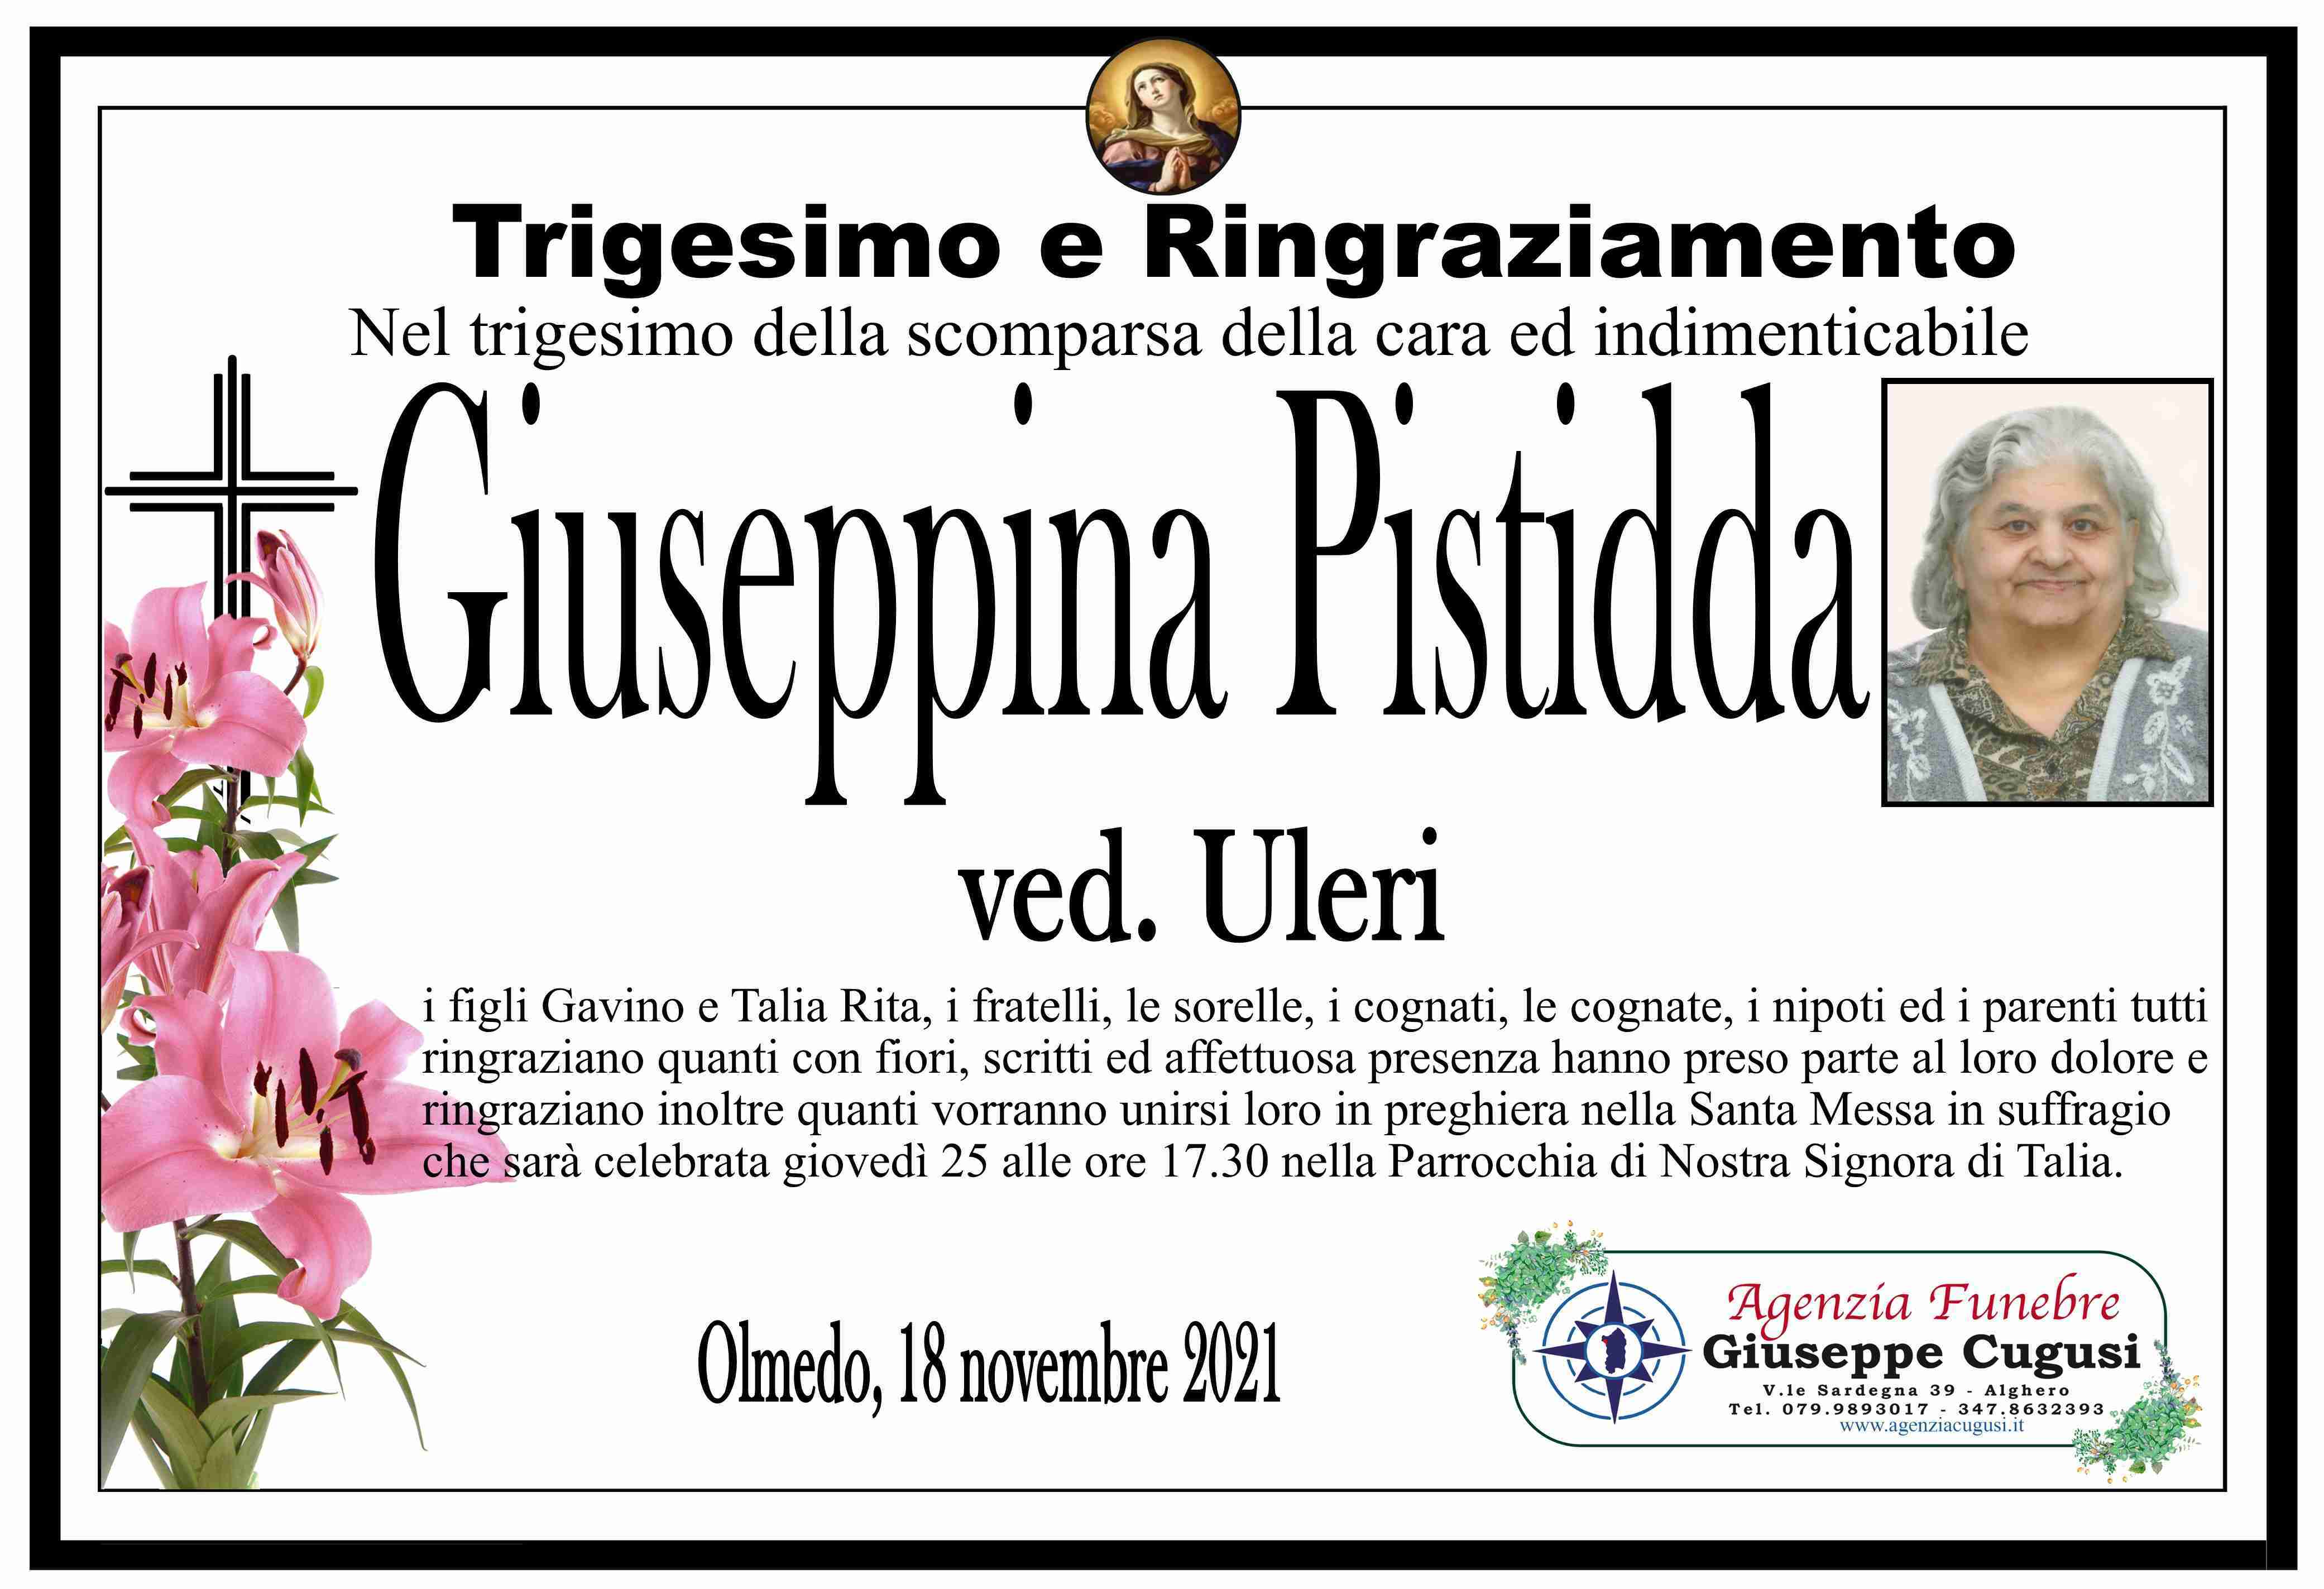 Giuseppina Pistidda